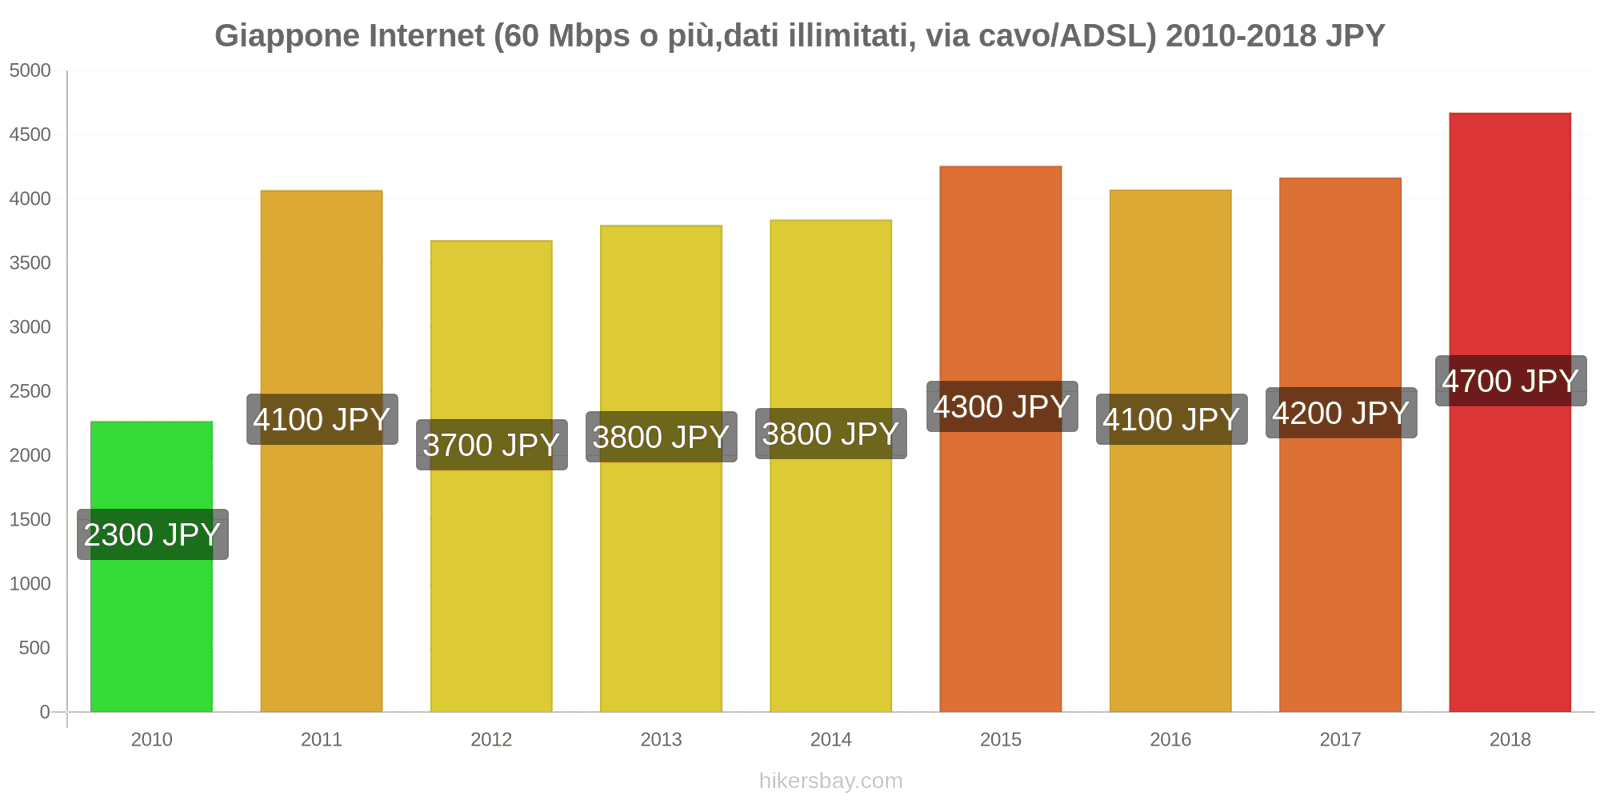 Giappone cambi di prezzo Internet (60 Mbps o più, dati illimitati, cavo/ADSL) hikersbay.com